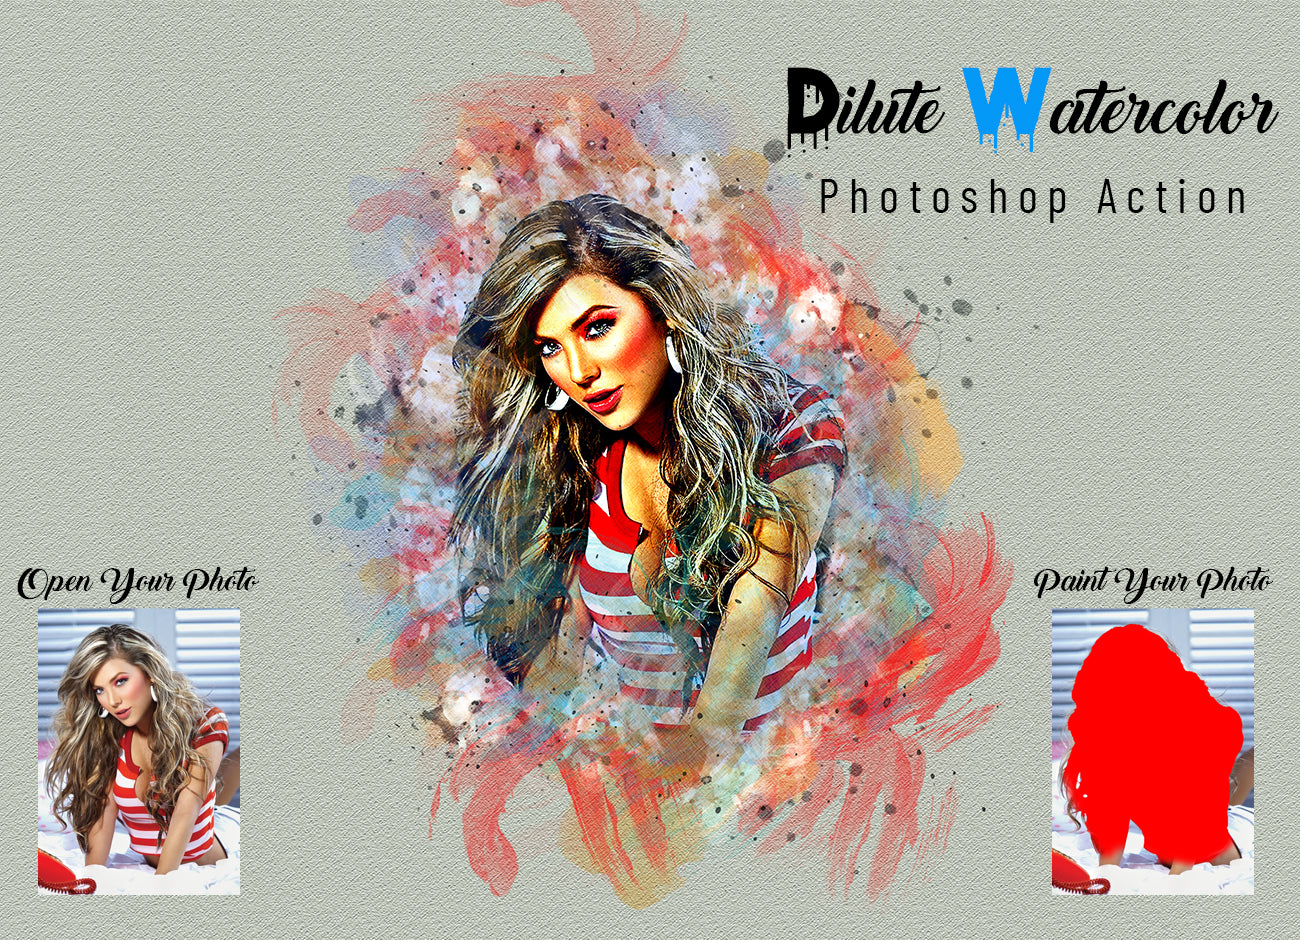 22 Watercolor Effect Photoshop Actions Bundle - Artixty